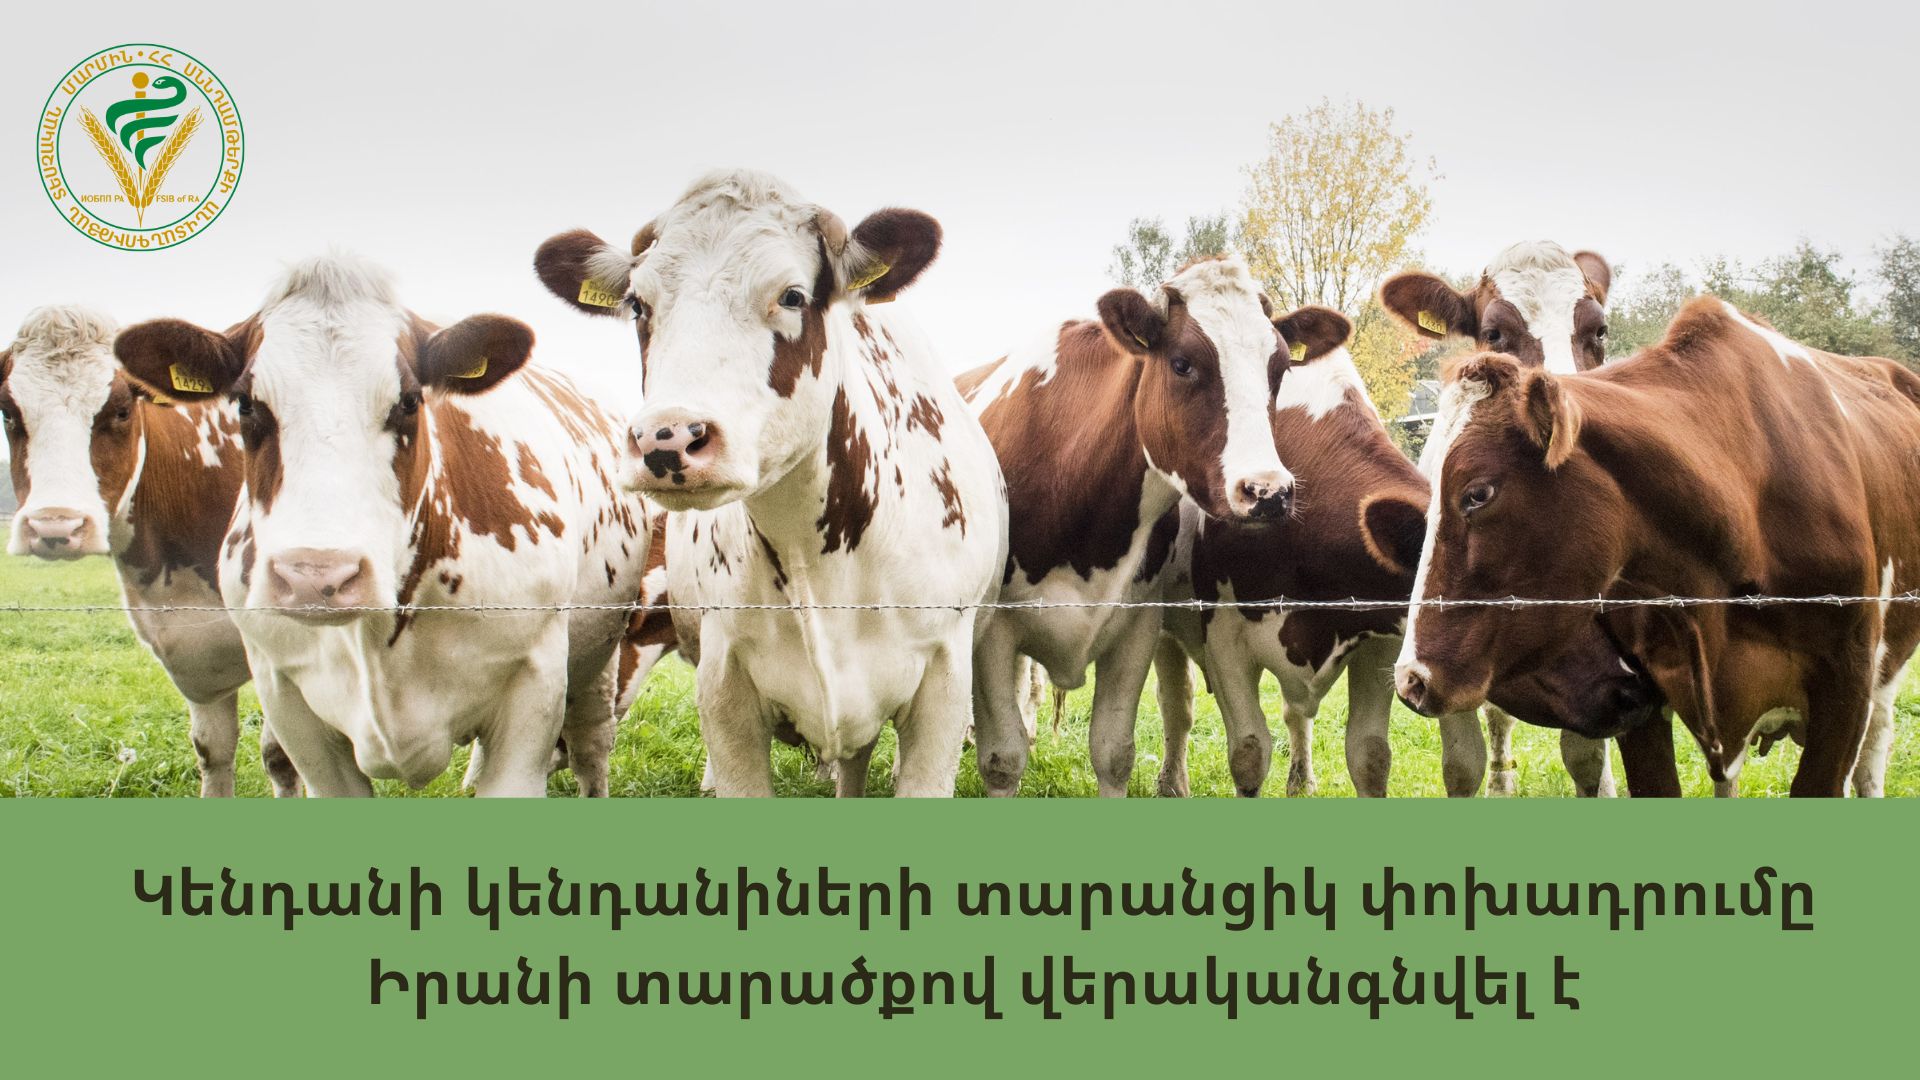 Իրանը վերականգնել է երկրի տարածքով Հայաստանից խոշոր եղջերավոր կենդանիների տարանցիկ փոխադրումը